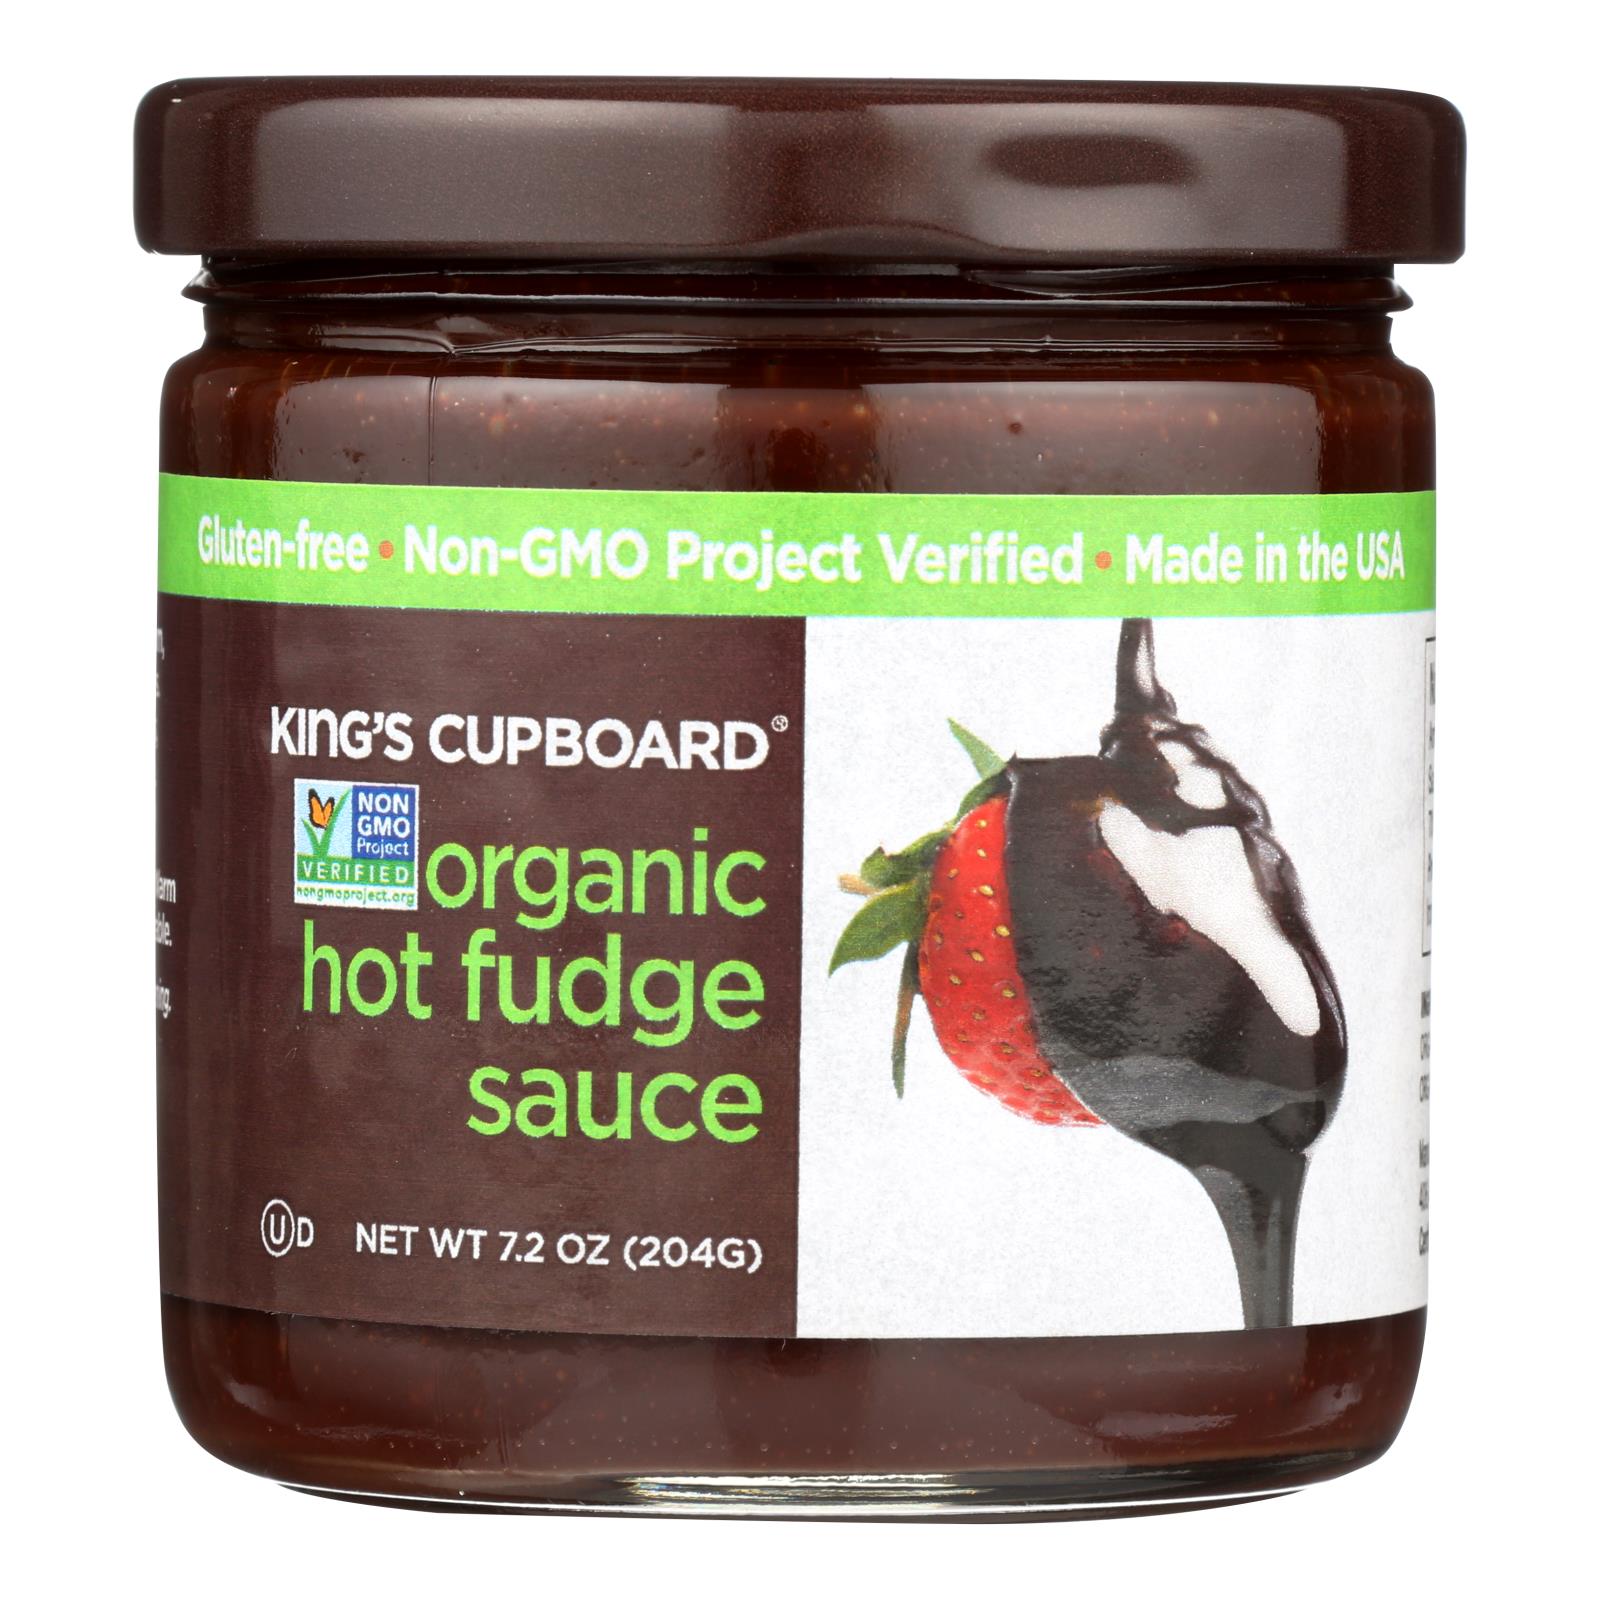 King's Cupboard Hot Fudge Sauce - 12개 묶음상품 - 7.2 OZ